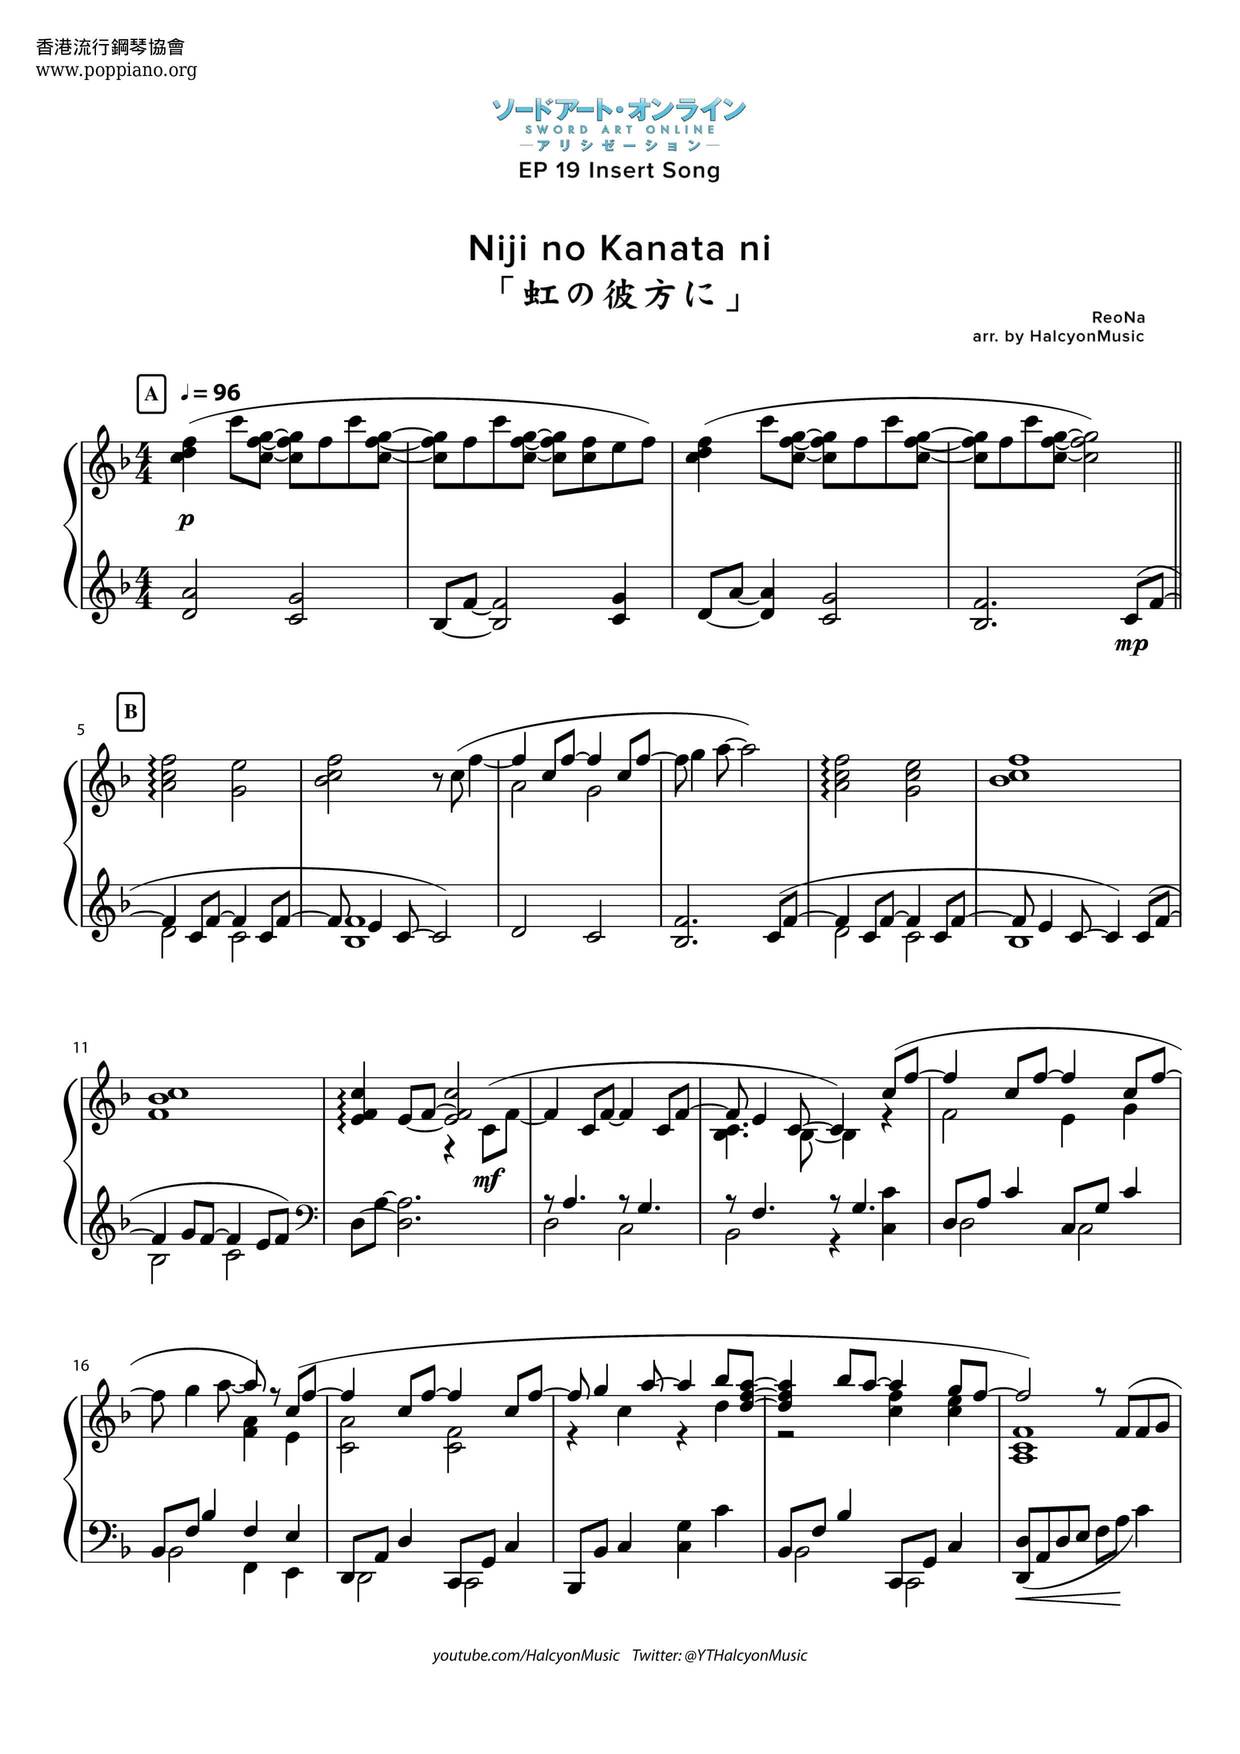 Hong Zhi Be Fang Score